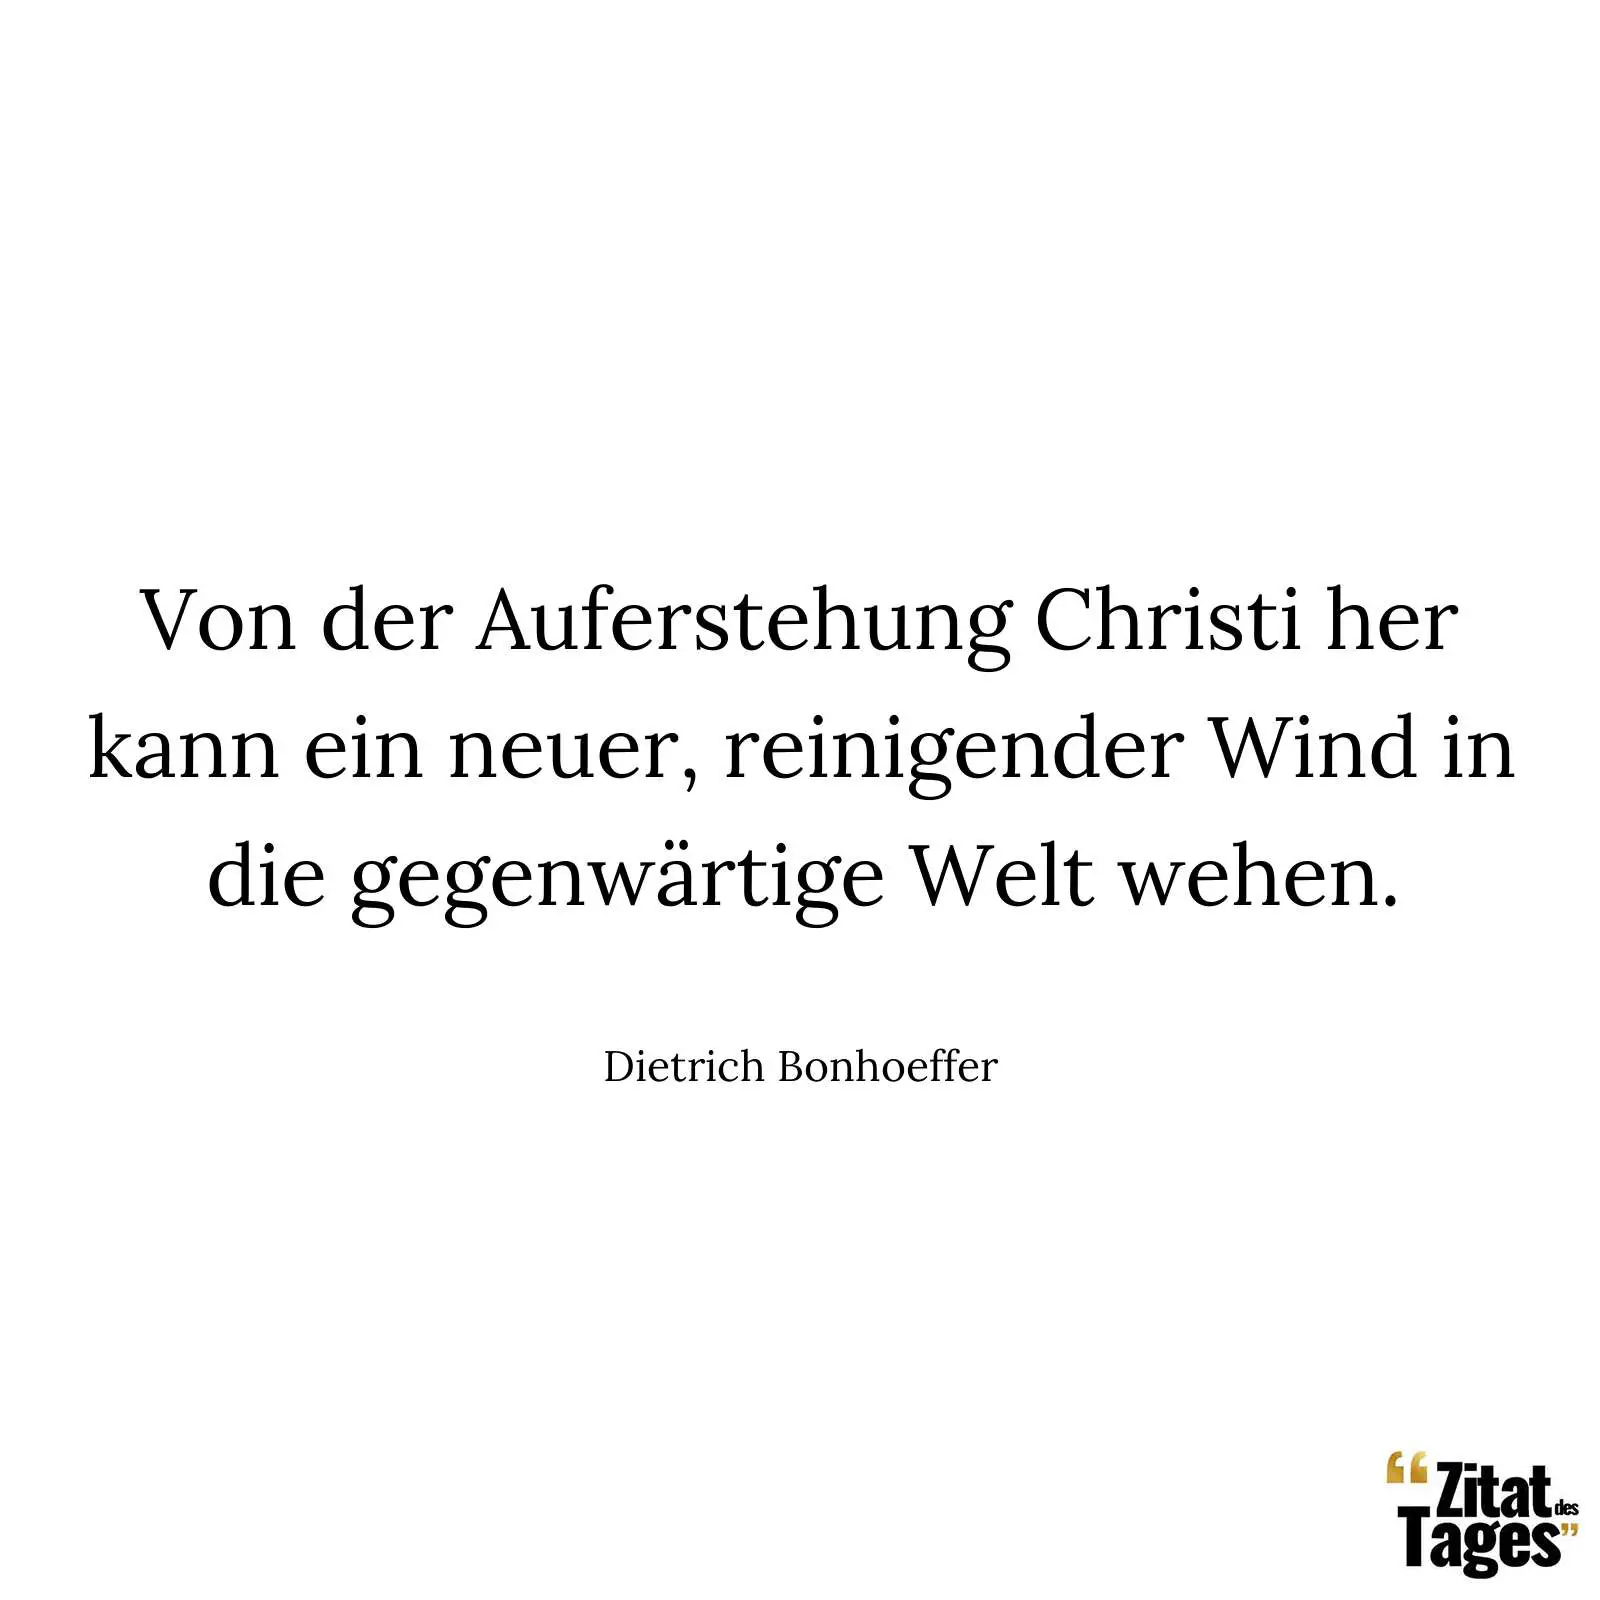 Von der Auferstehung Christi her kann ein neuer, reinigender Wind in die gegenwärtige Welt wehen. - Dietrich Bonhoeffer